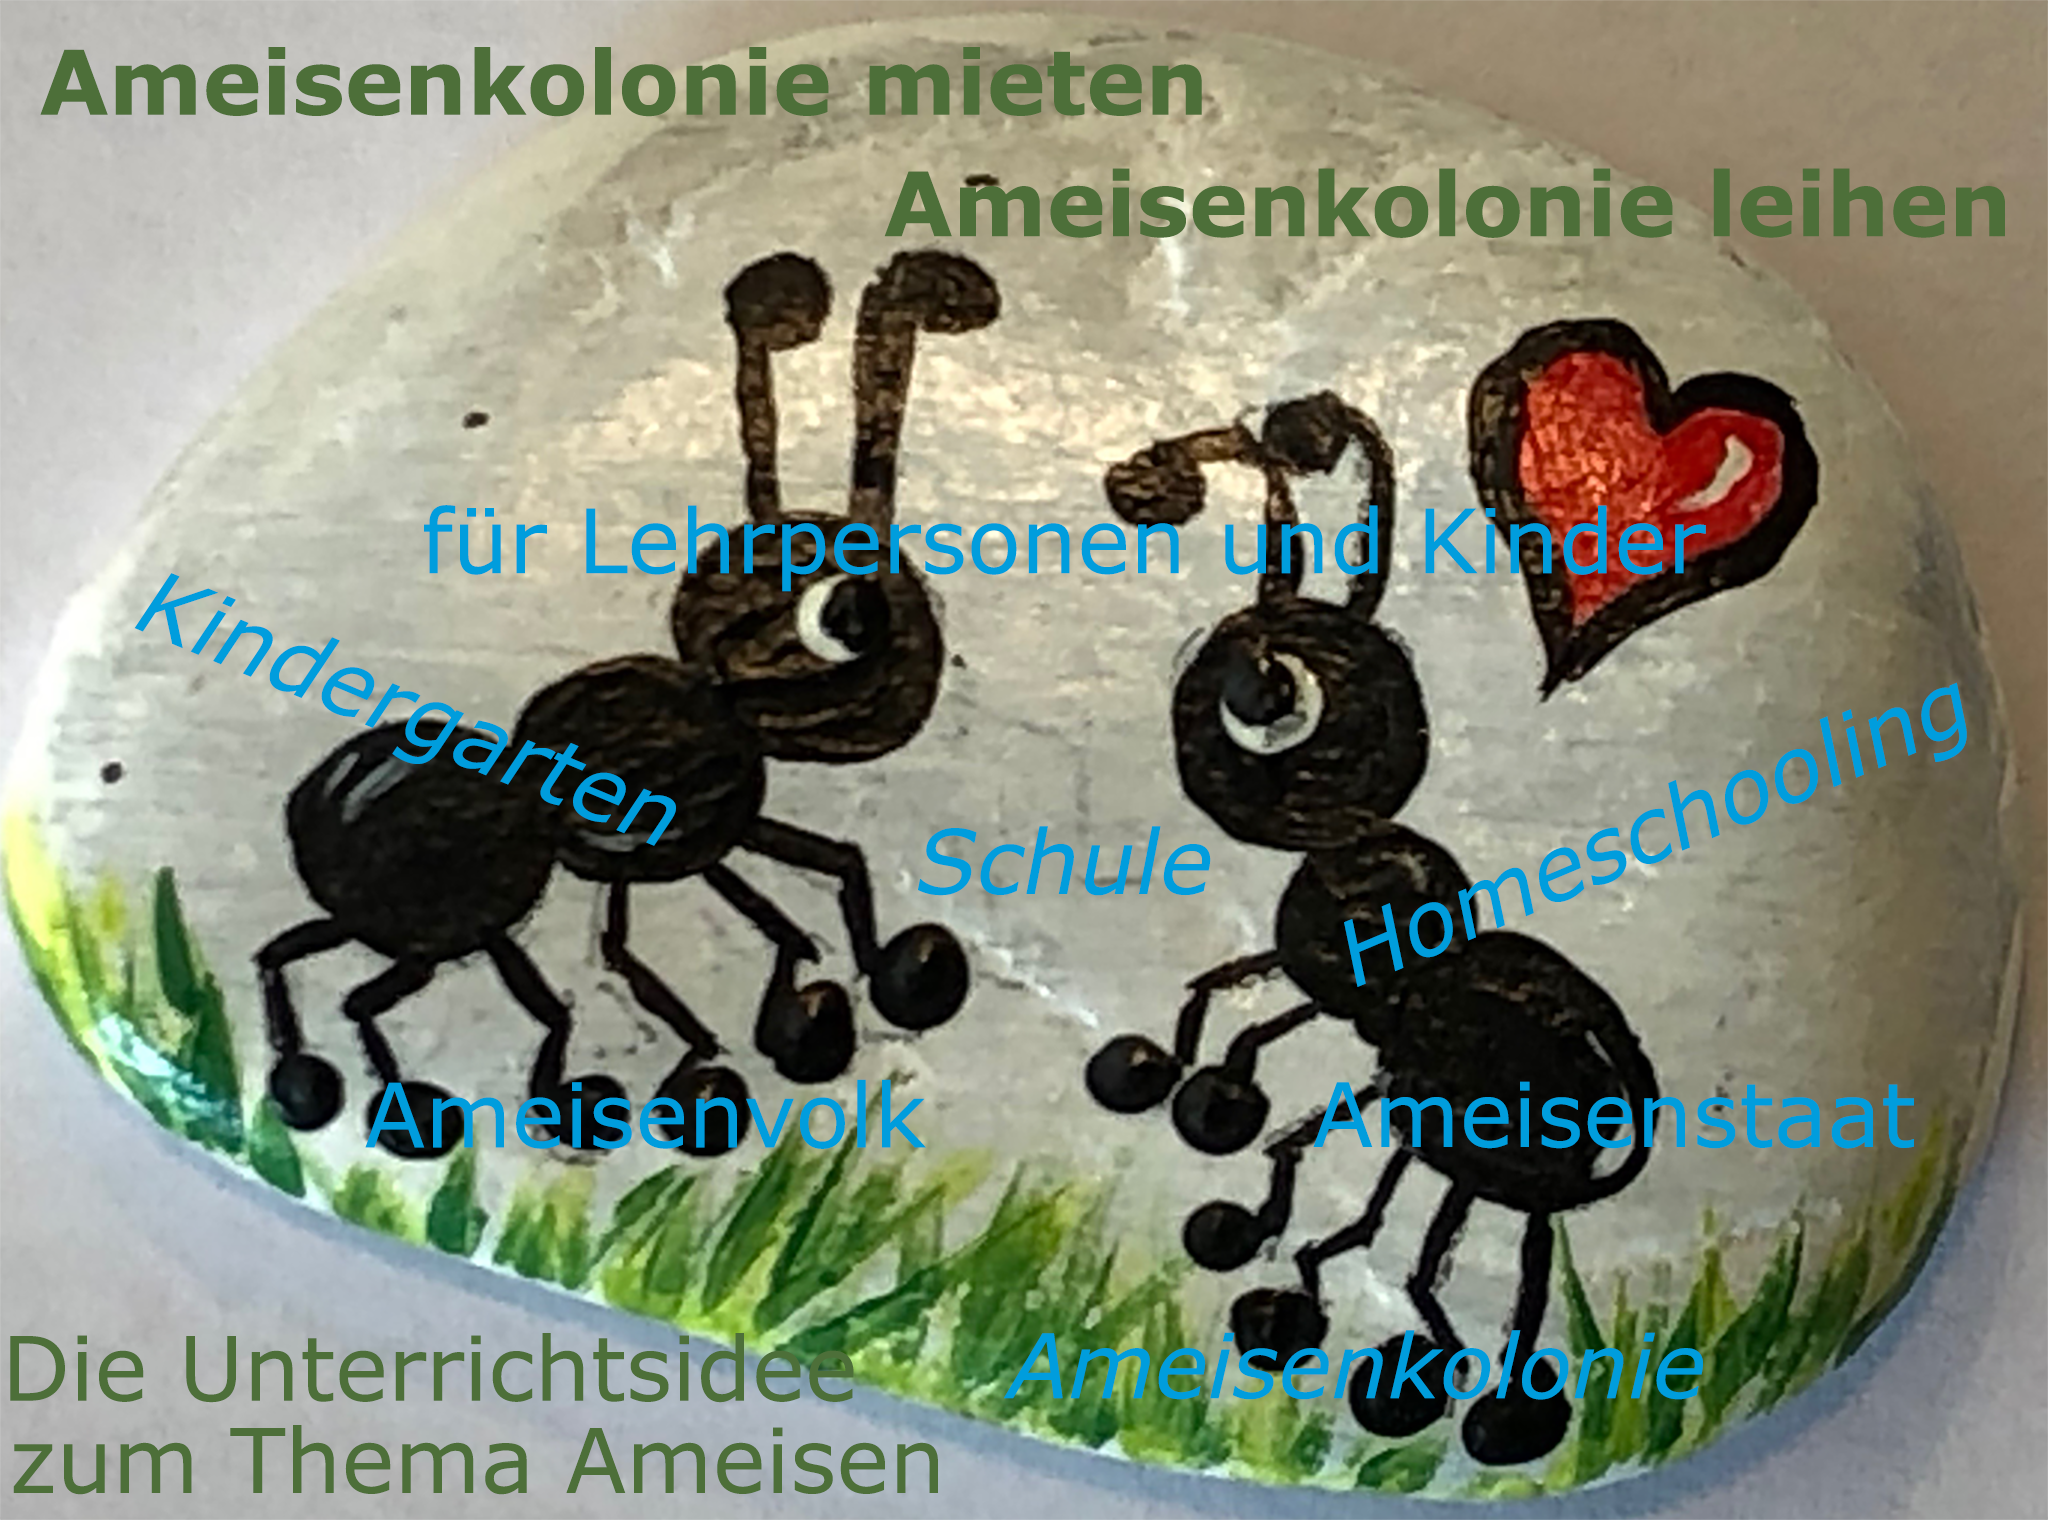 Ihre Ameisenkolonie im Kindergarten / Ihre Ameisenkolonie in der Schule